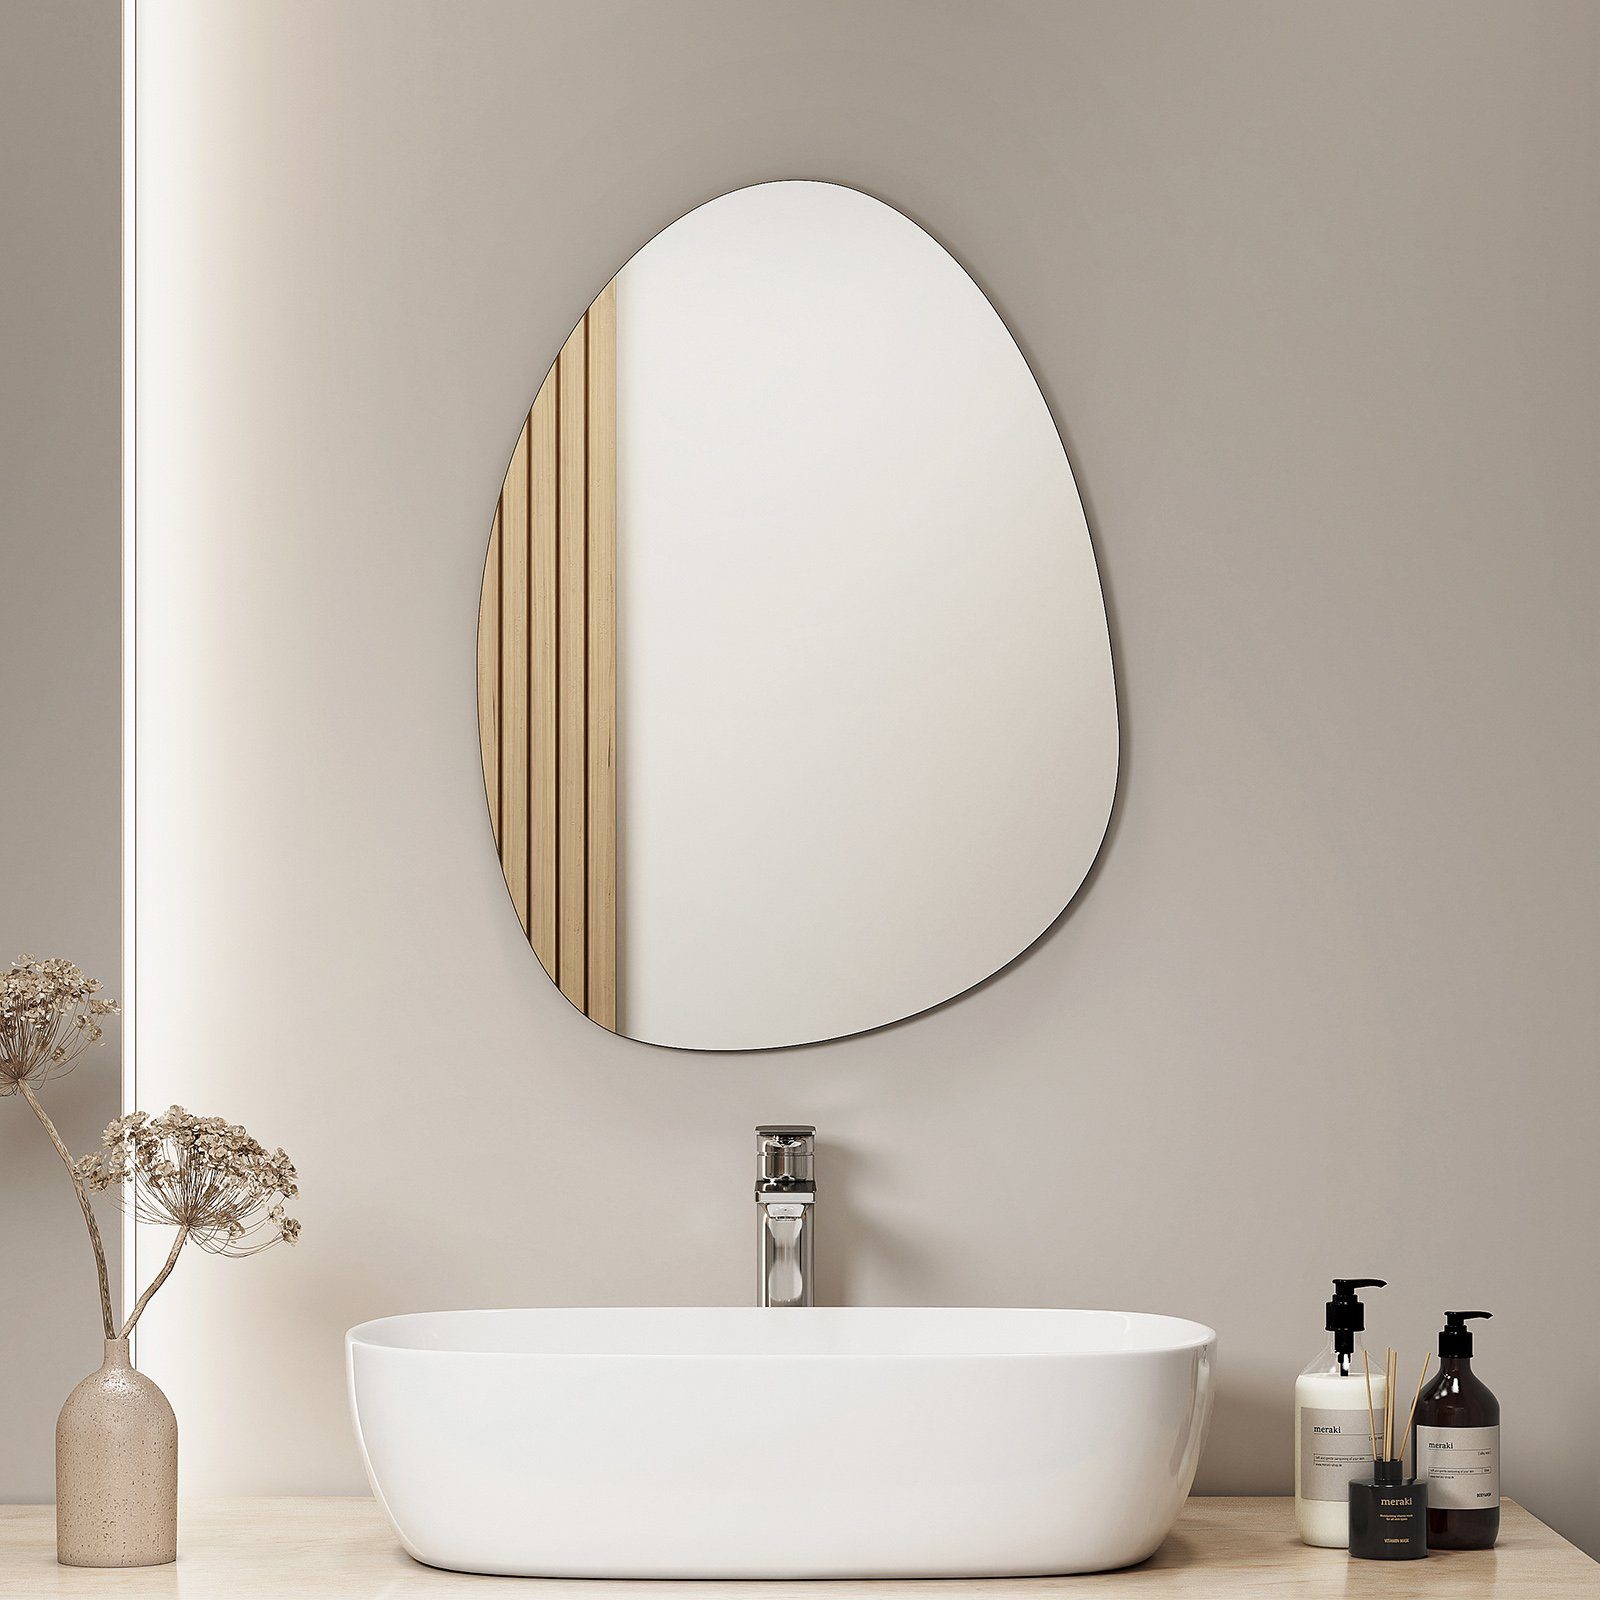 S'AFIELINA Badspiegel Badspiegel Modern ohne Wandspiegel Installation, Einfache 45×60cm, kein Rahmen Netzkabel